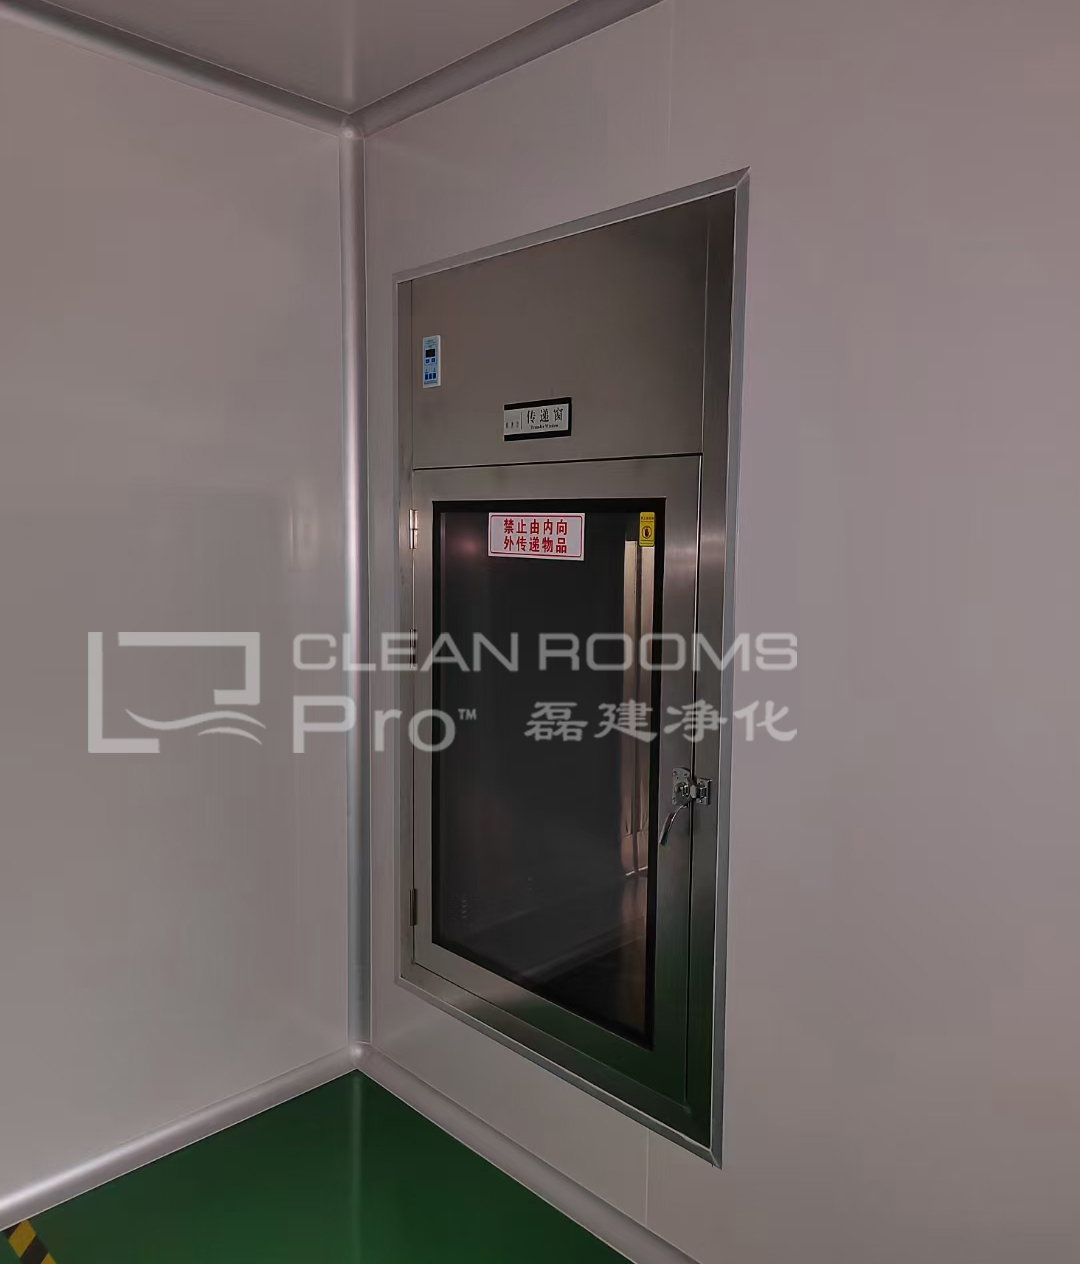 上海三类医疗器械美容针产品生产万级净化车间装修施工案例 (7)